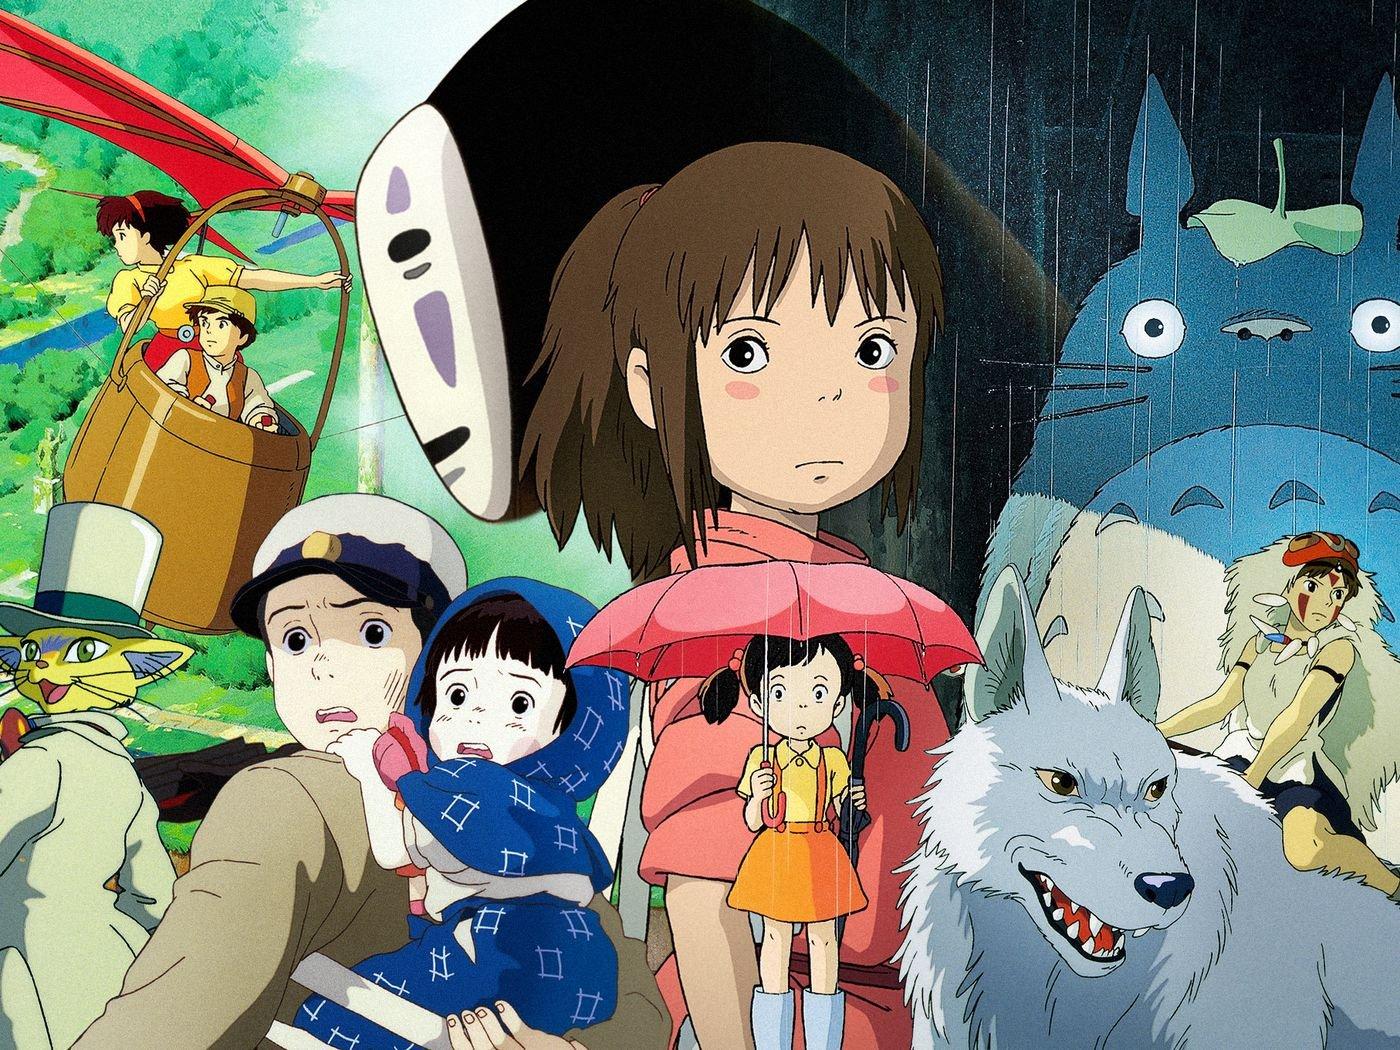 Spirited Away" - phim hoạt hình đoạt giải Oscar thay đổi toàn cảnh anime  Nhật Bản | VOV.VN